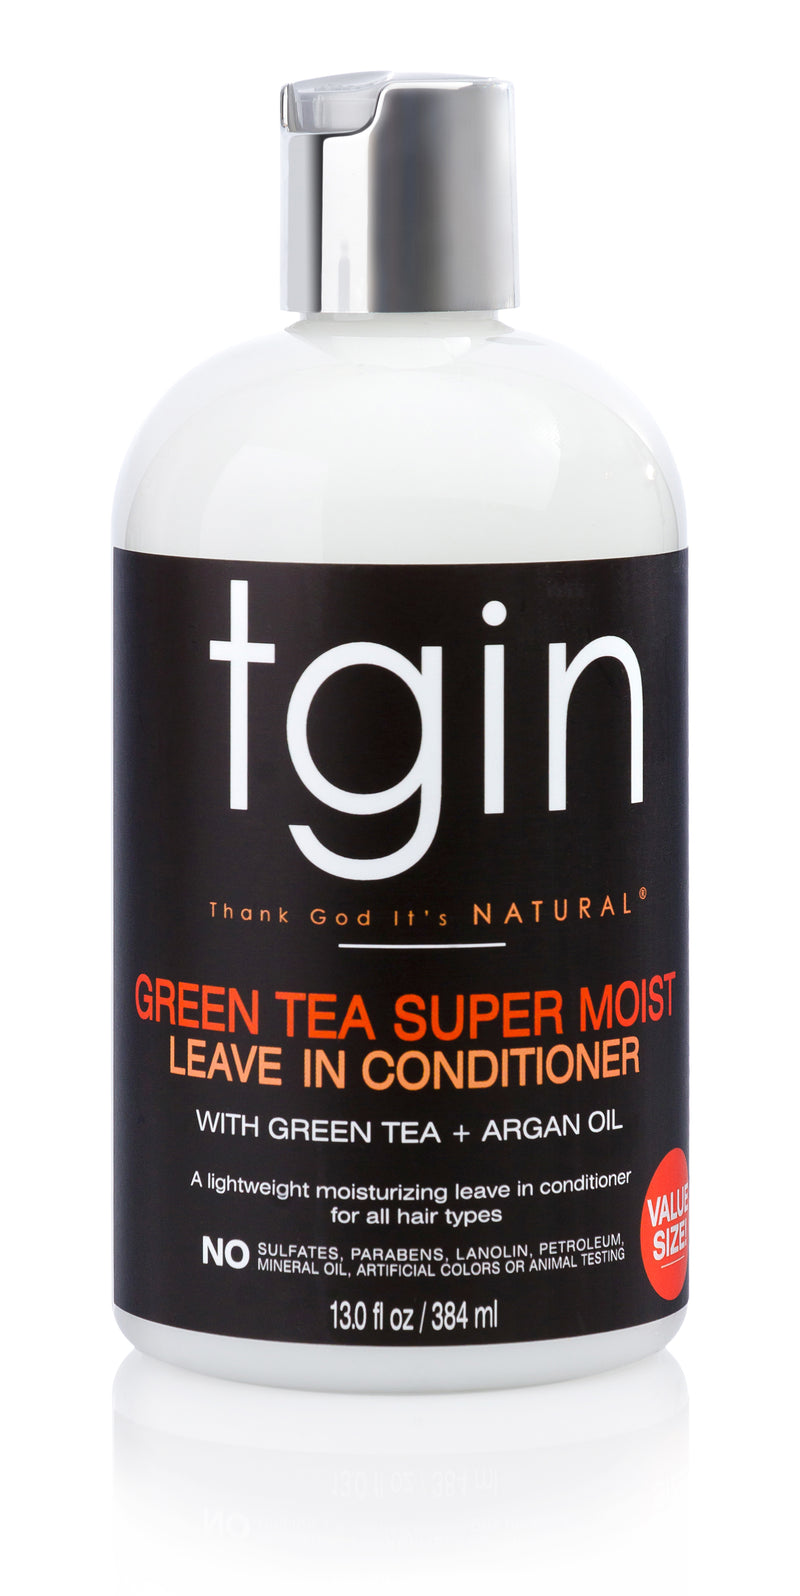 Tgin Green Tea Super Moist Leave in-Conditioner